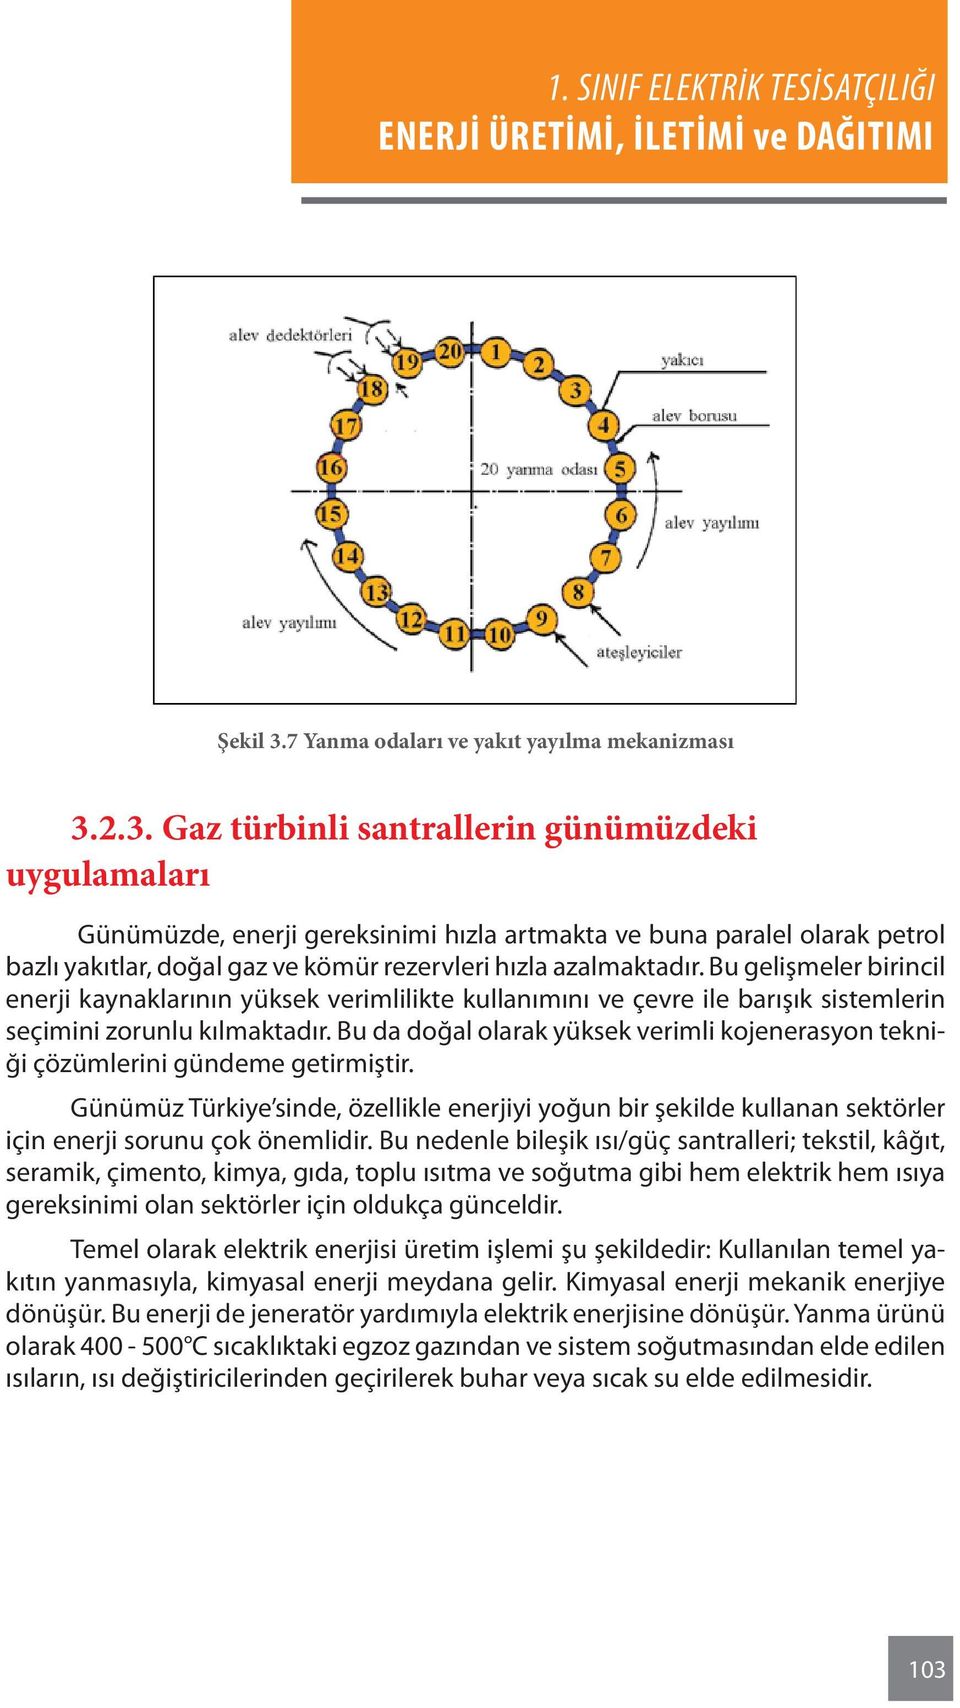 Bu da doğal olarak yüksek verimli kojenerasyon tekniği çözümlerini gündeme getirmiştir. Günümüz Türkiye sinde, özellikle enerjiyi yoğun bir şekilde kullanan sektörler için enerji sorunu çok önemlidir.